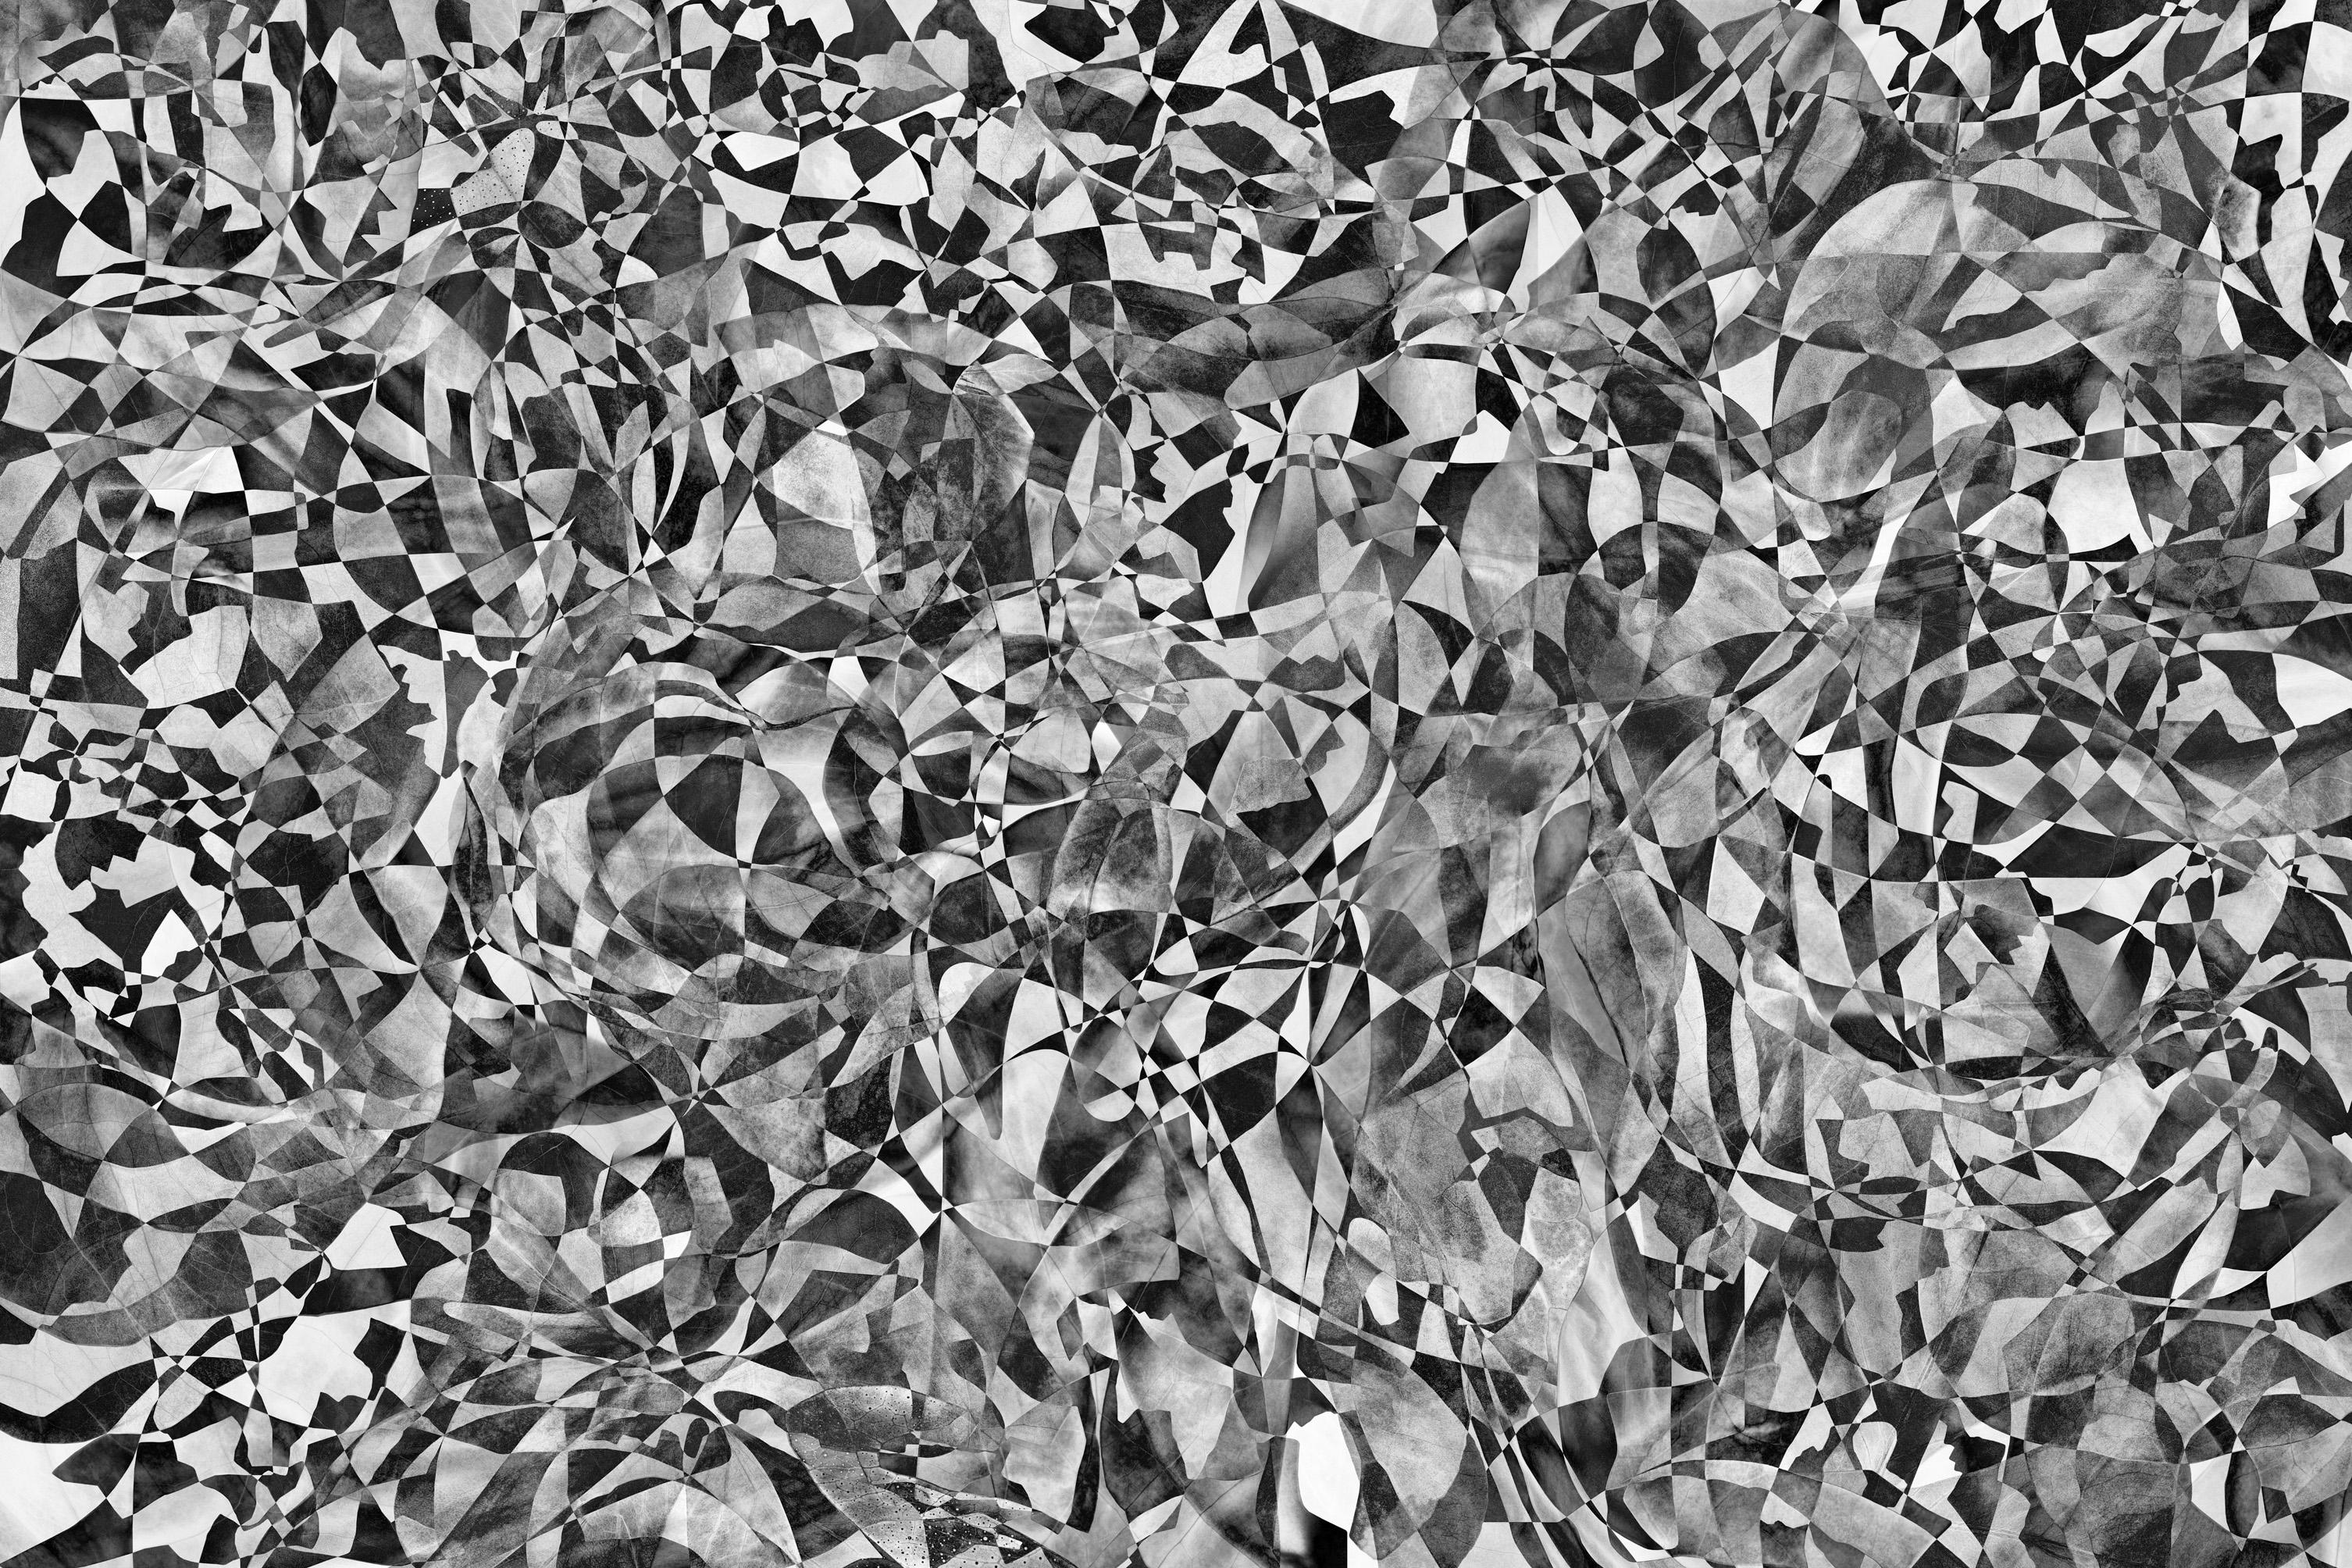 Hubert Blanz Black and White Photograph - Feldforschung 07 - Contemporary Abstract Diamond Texture Photograph